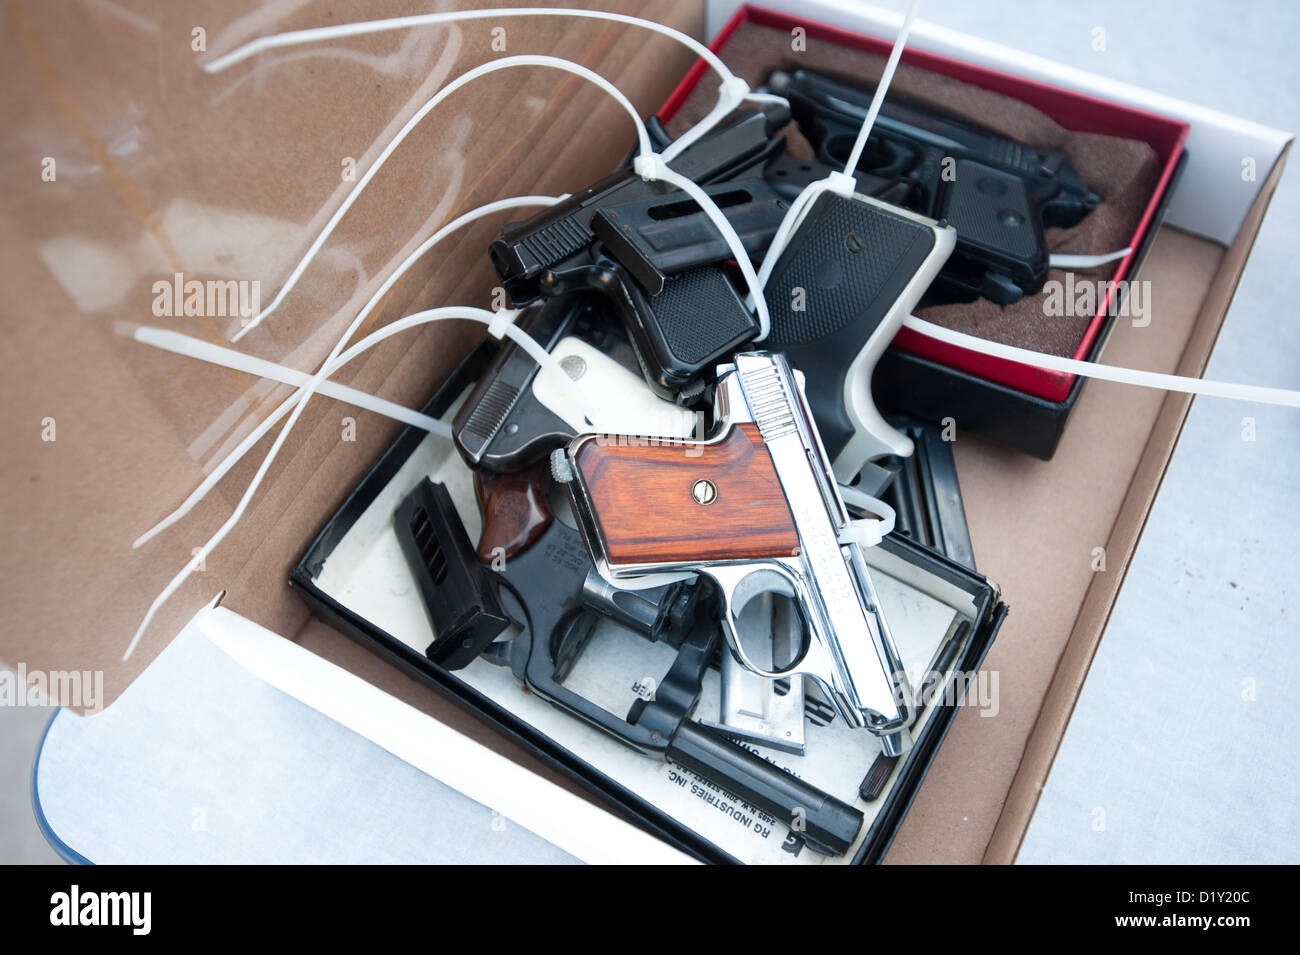 8 janvier 2013 - Tucson, Arizona, États-Unis - une boîte de pistolets récupérés par Tucson (Arizona) la police dans le cadre d'un rachat des armes à feu s'asseoir sur une table après avoir été traitée. Les gens se sont vu offrir une épicerie de 50 $ carte cadeau en échange de leurs armes. (Crédit Image : ©/ZUMAPRESS.com) s Seberger Banque D'Images